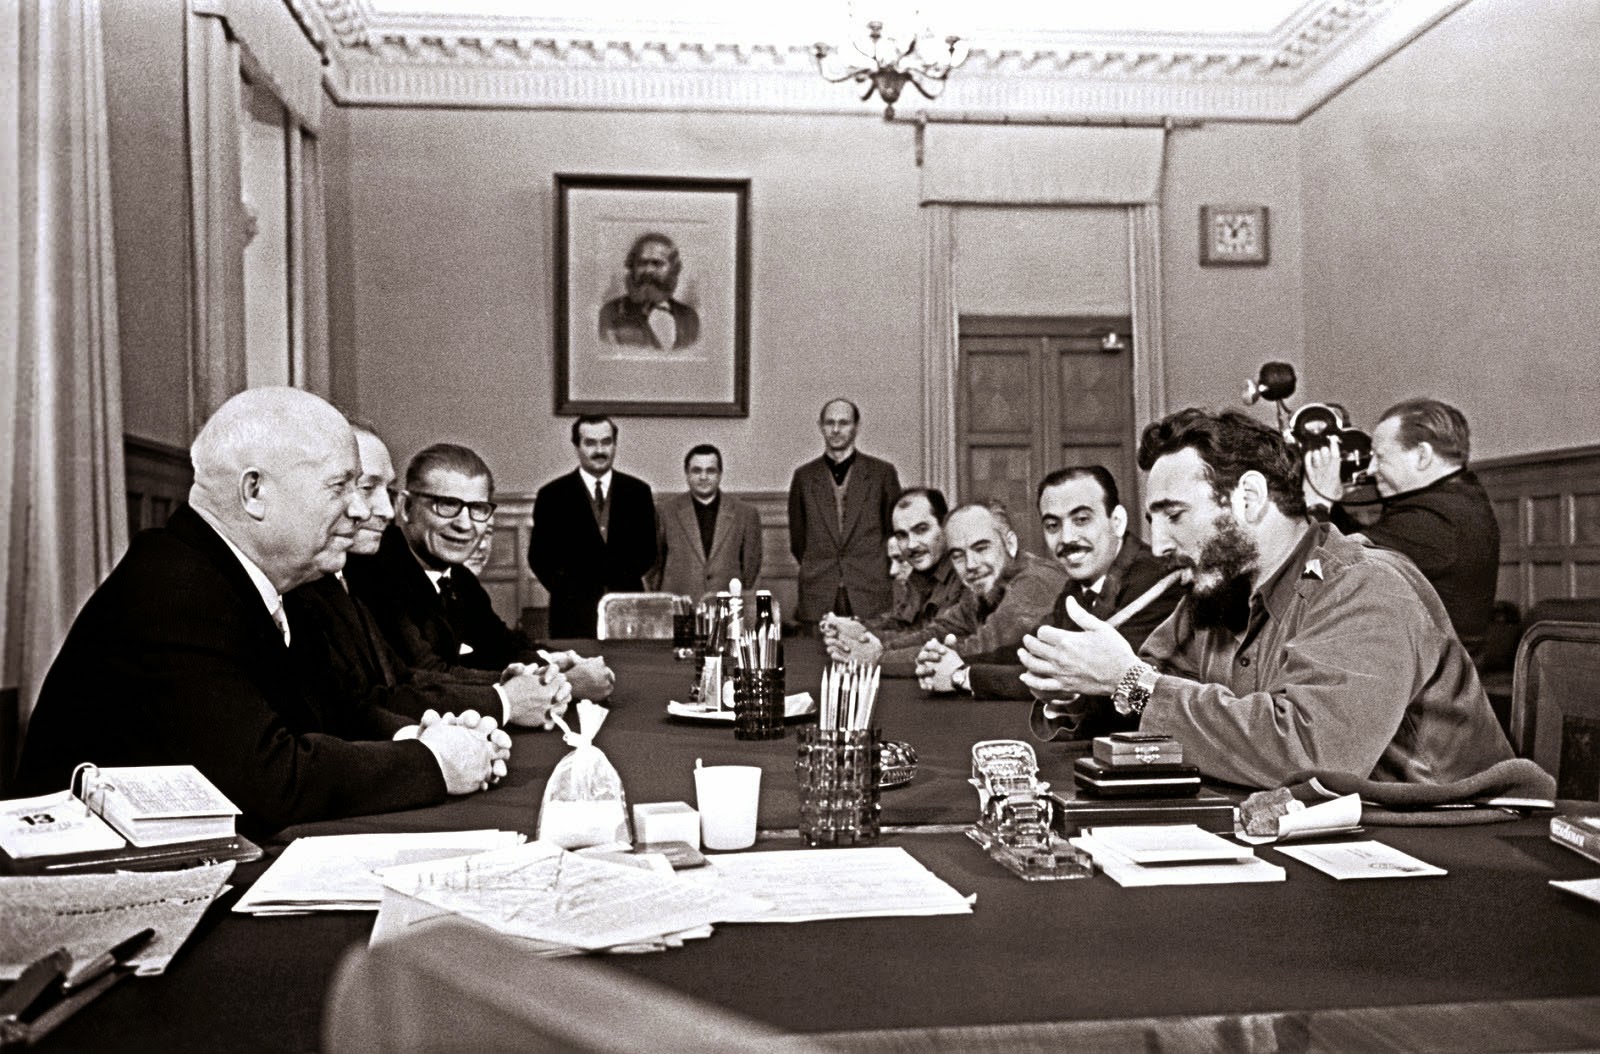 Фидель Кастро с 2 часами «Rolex» на руке курит сигару на встрече с Никитой Хрущёвым. Кремль. 1963 год